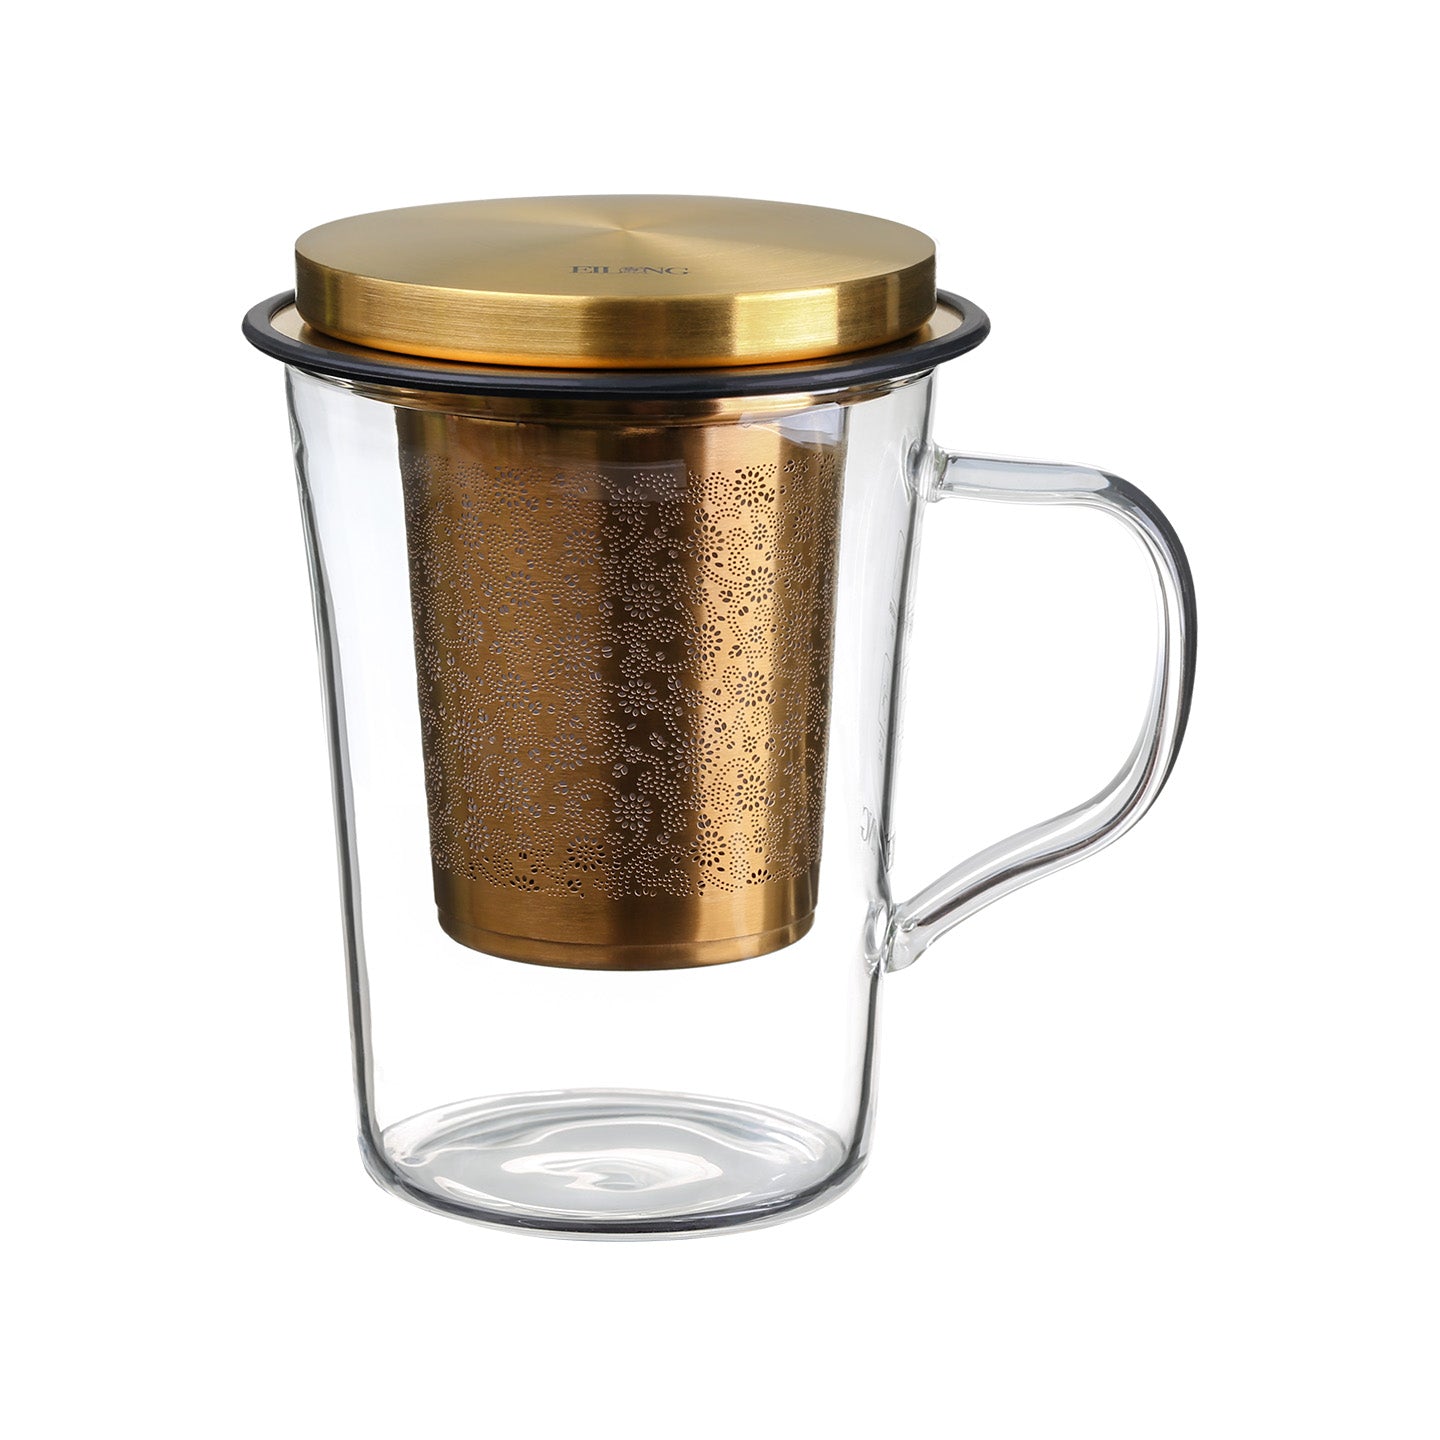 https://www.eilong.com/cdn/shop/products/glass-tea-mug-infuser-aurora-deeply-gold-420ml.jpg?v=1654755986